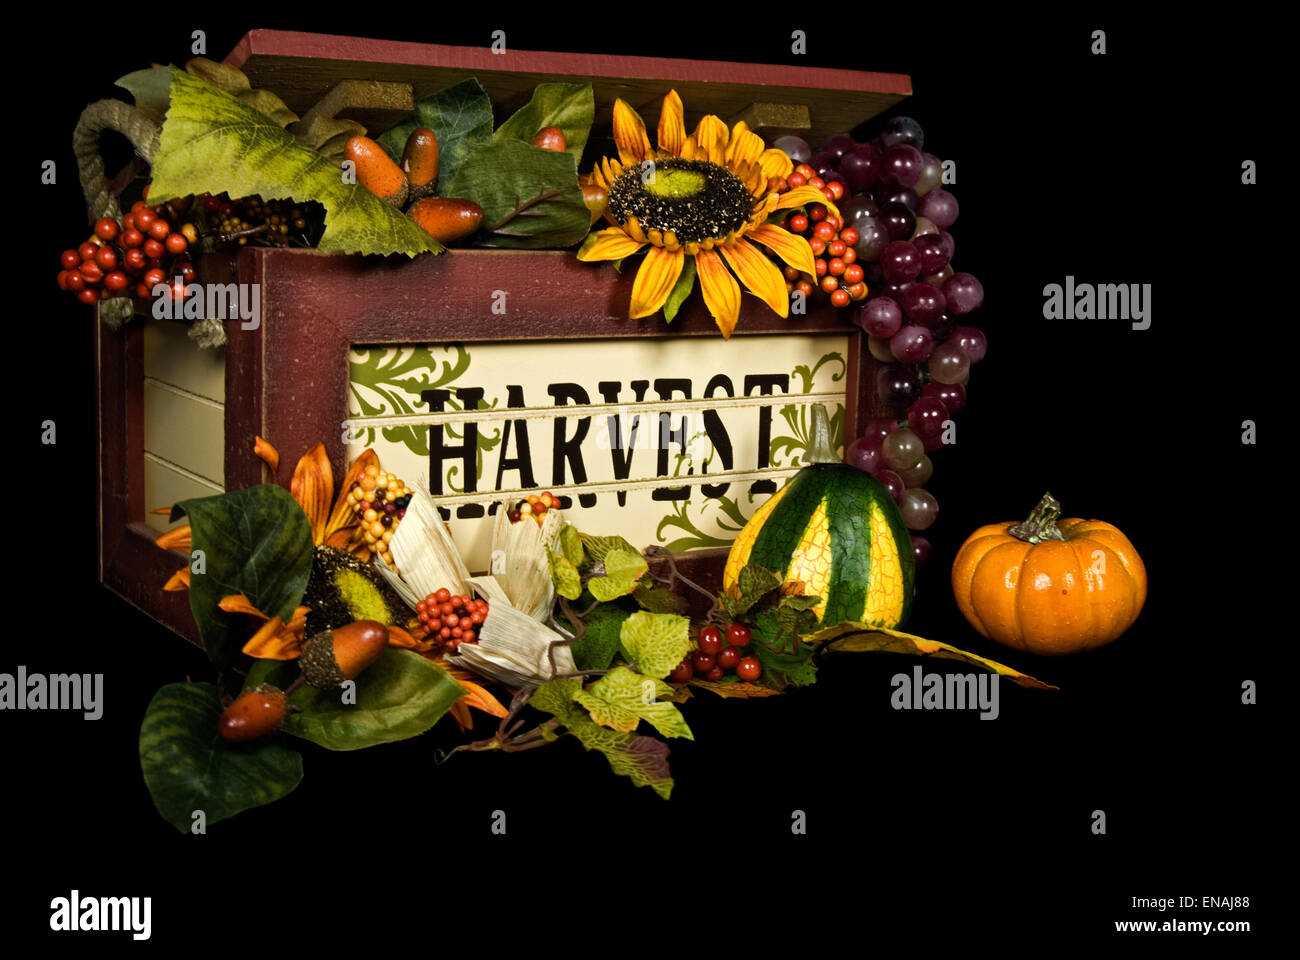 Holz-Box mit herbstlichen Früchten und Blumen auf schwarz. Stockfoto